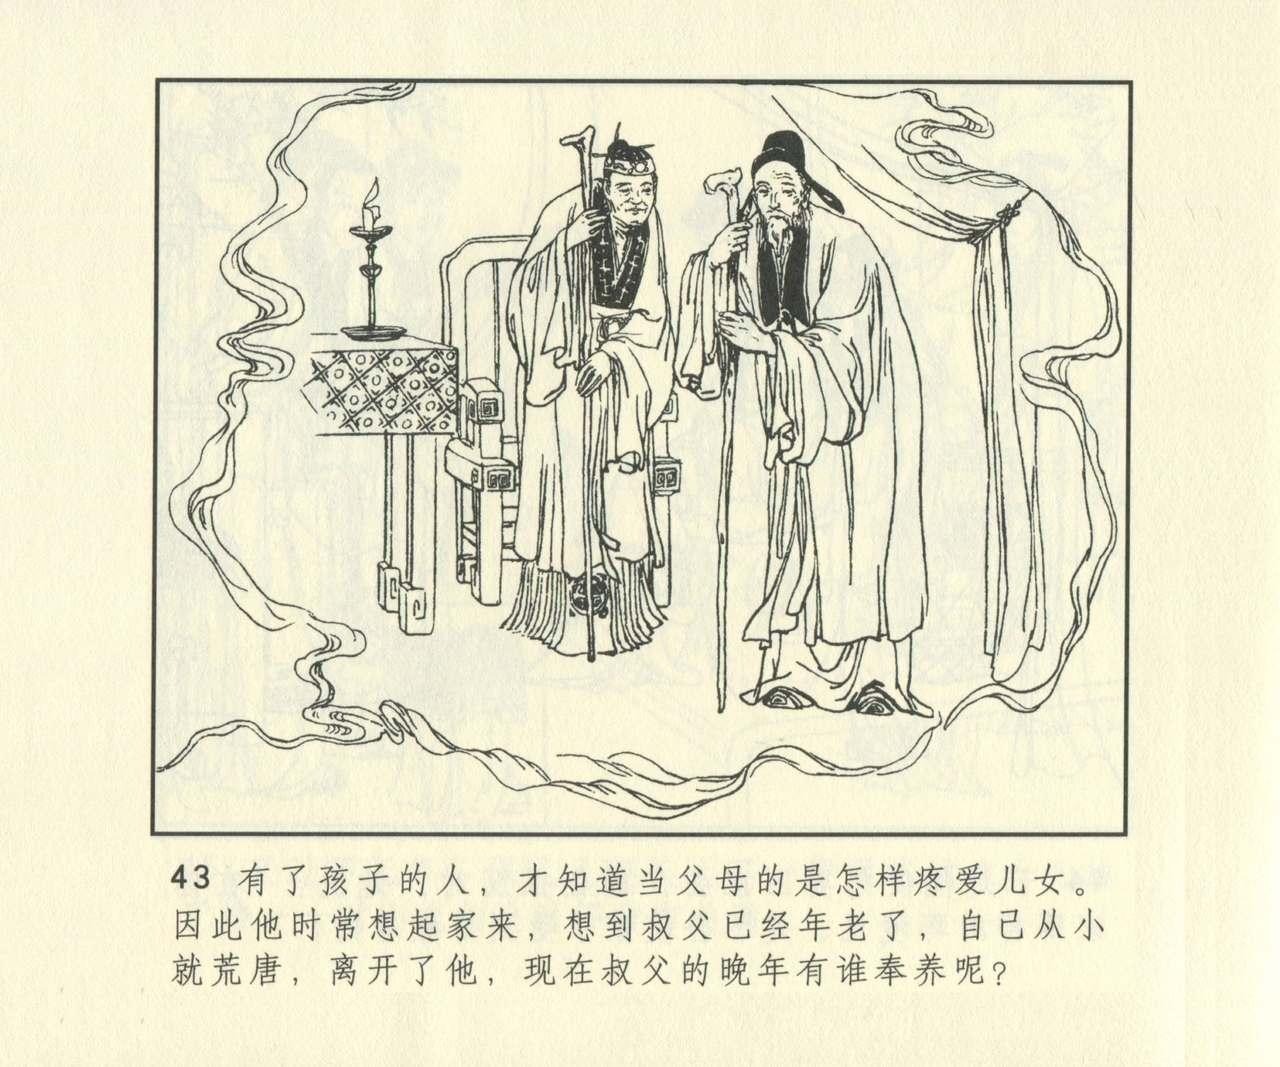 聊斋志异 张玮等绘 天津人民美术出版社 卷二十一 ~ 三十 659